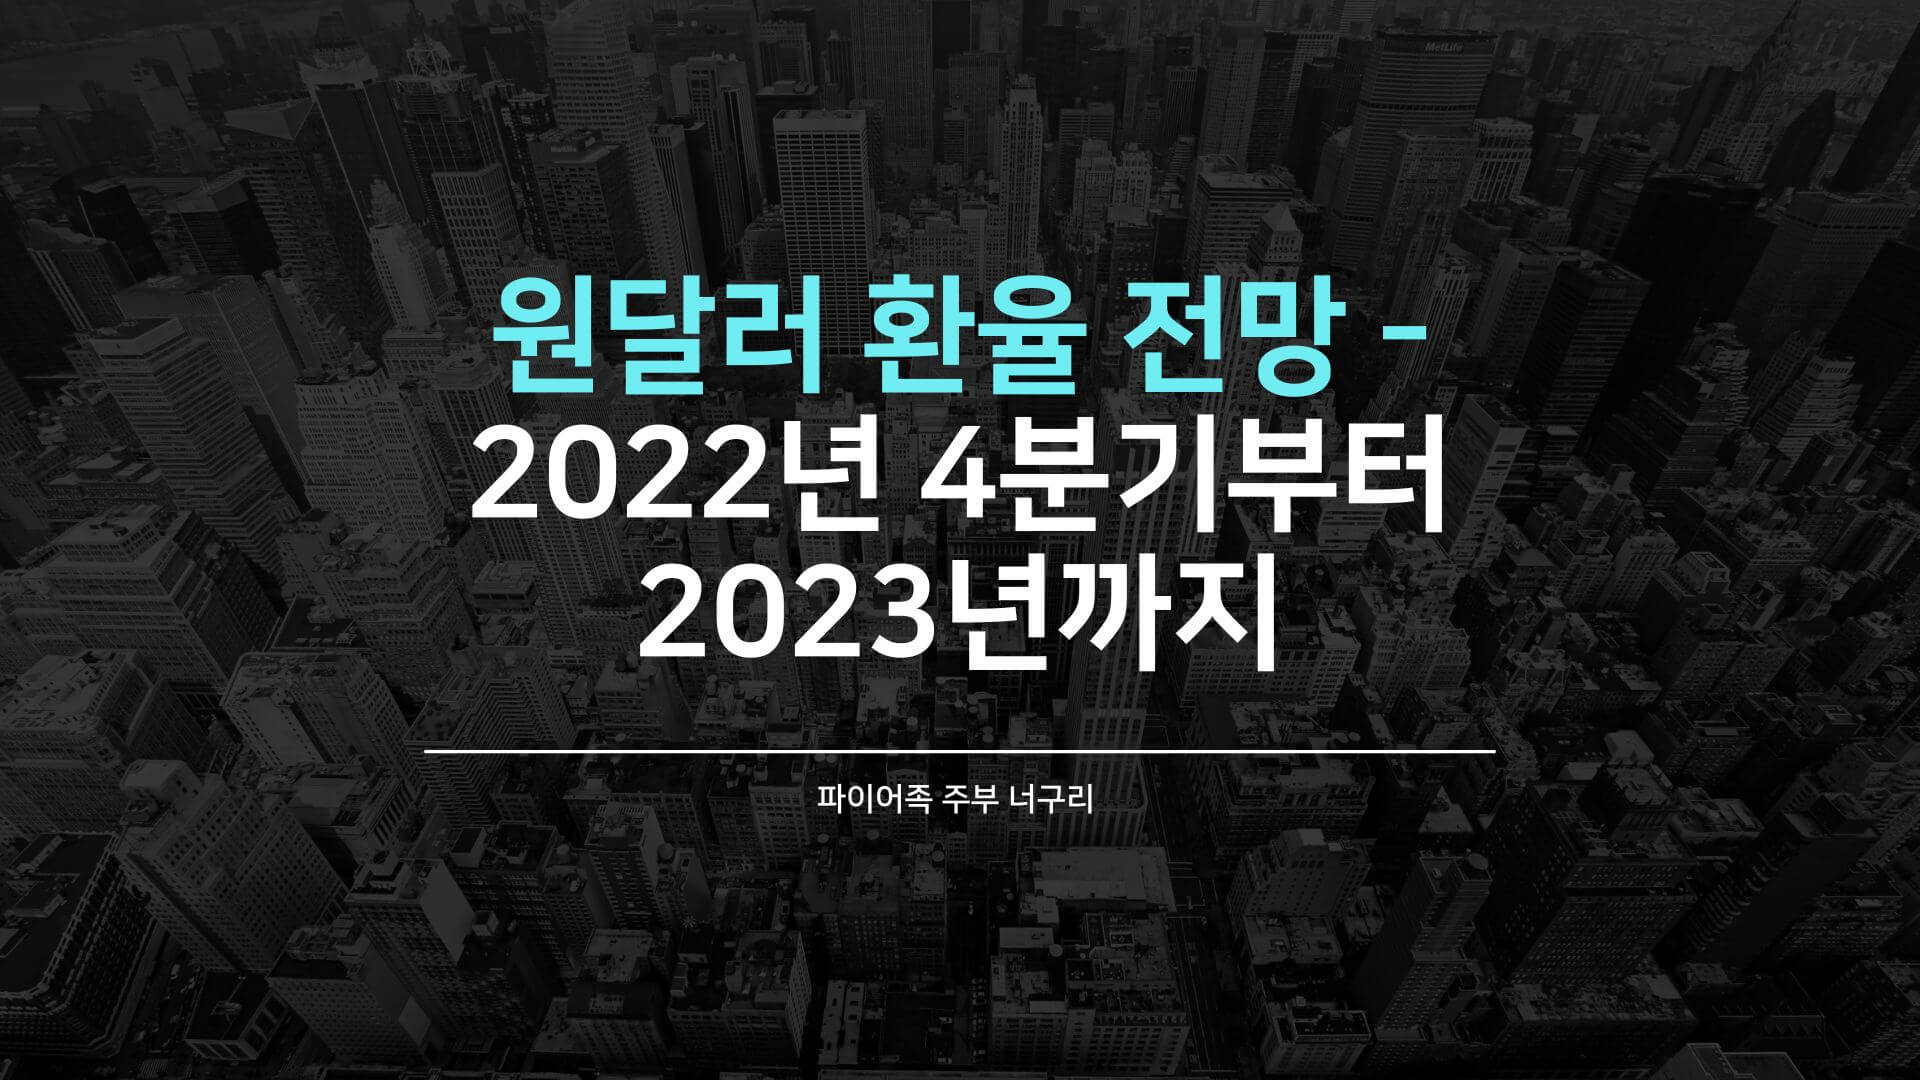 원달러 환율 전망 - 2022년 4분기부터 2023년까지